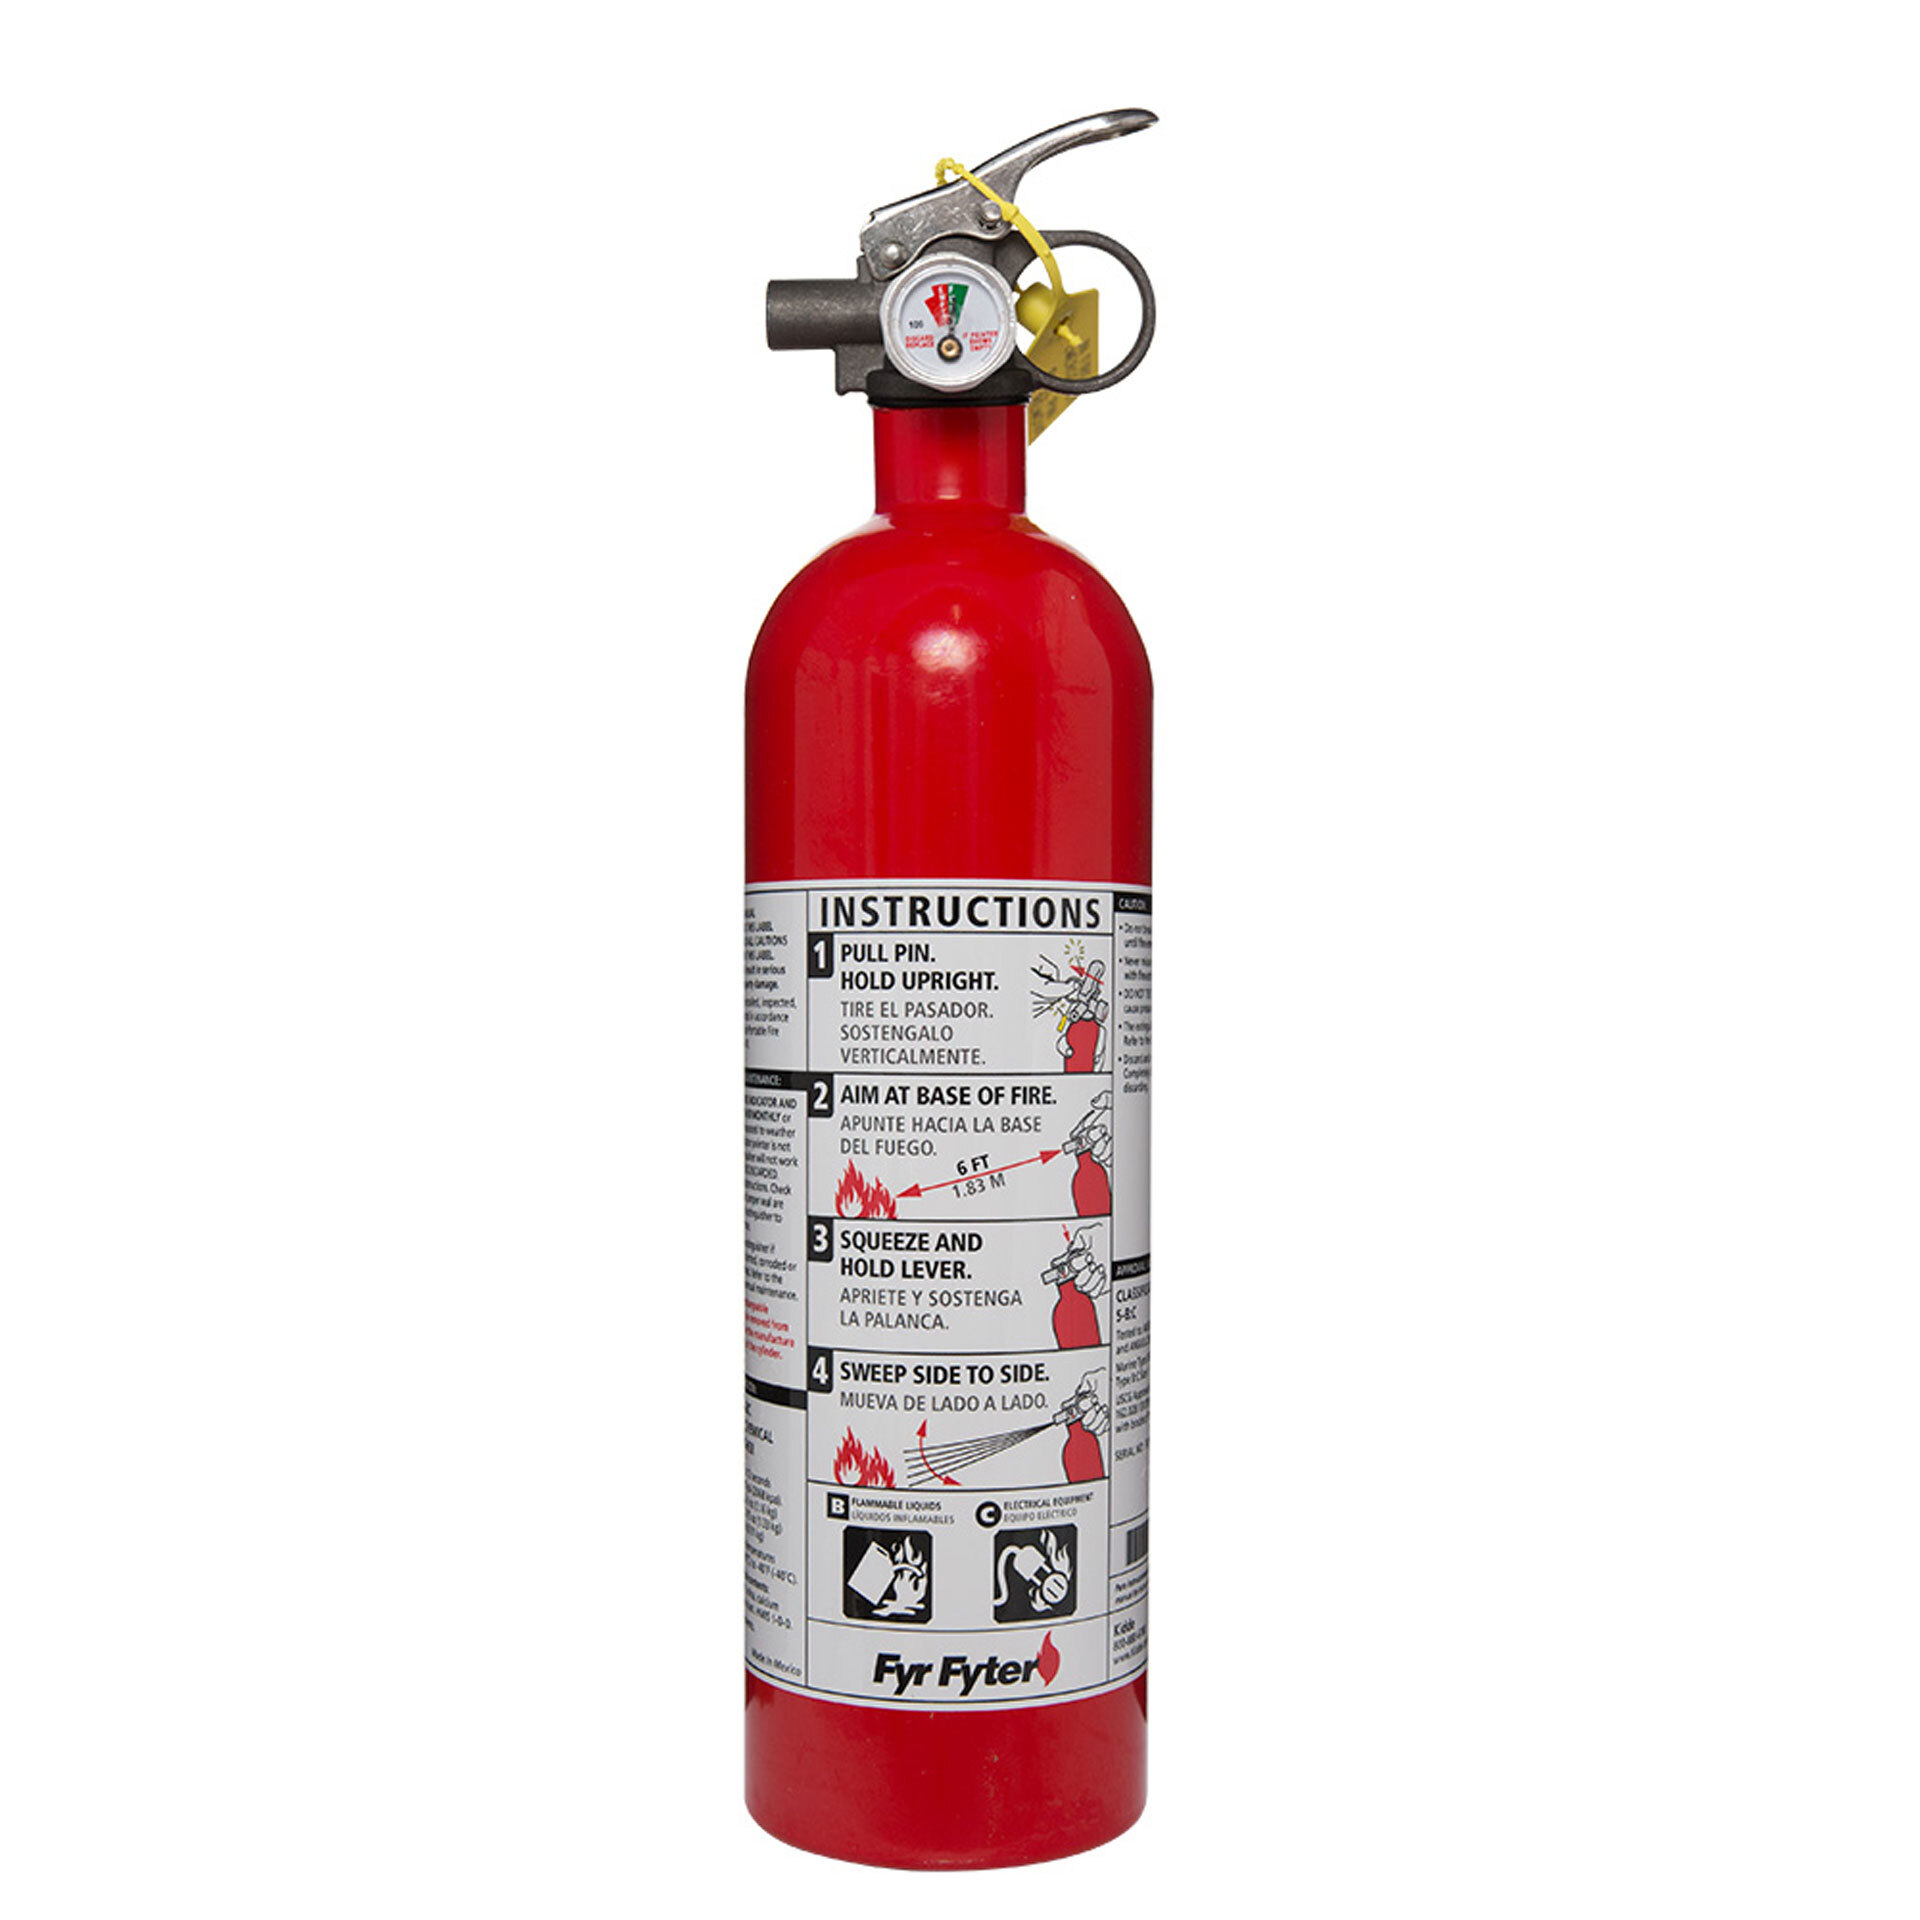 Kiddie® Fyr Fyter 5 B:C Fire Extinguisher